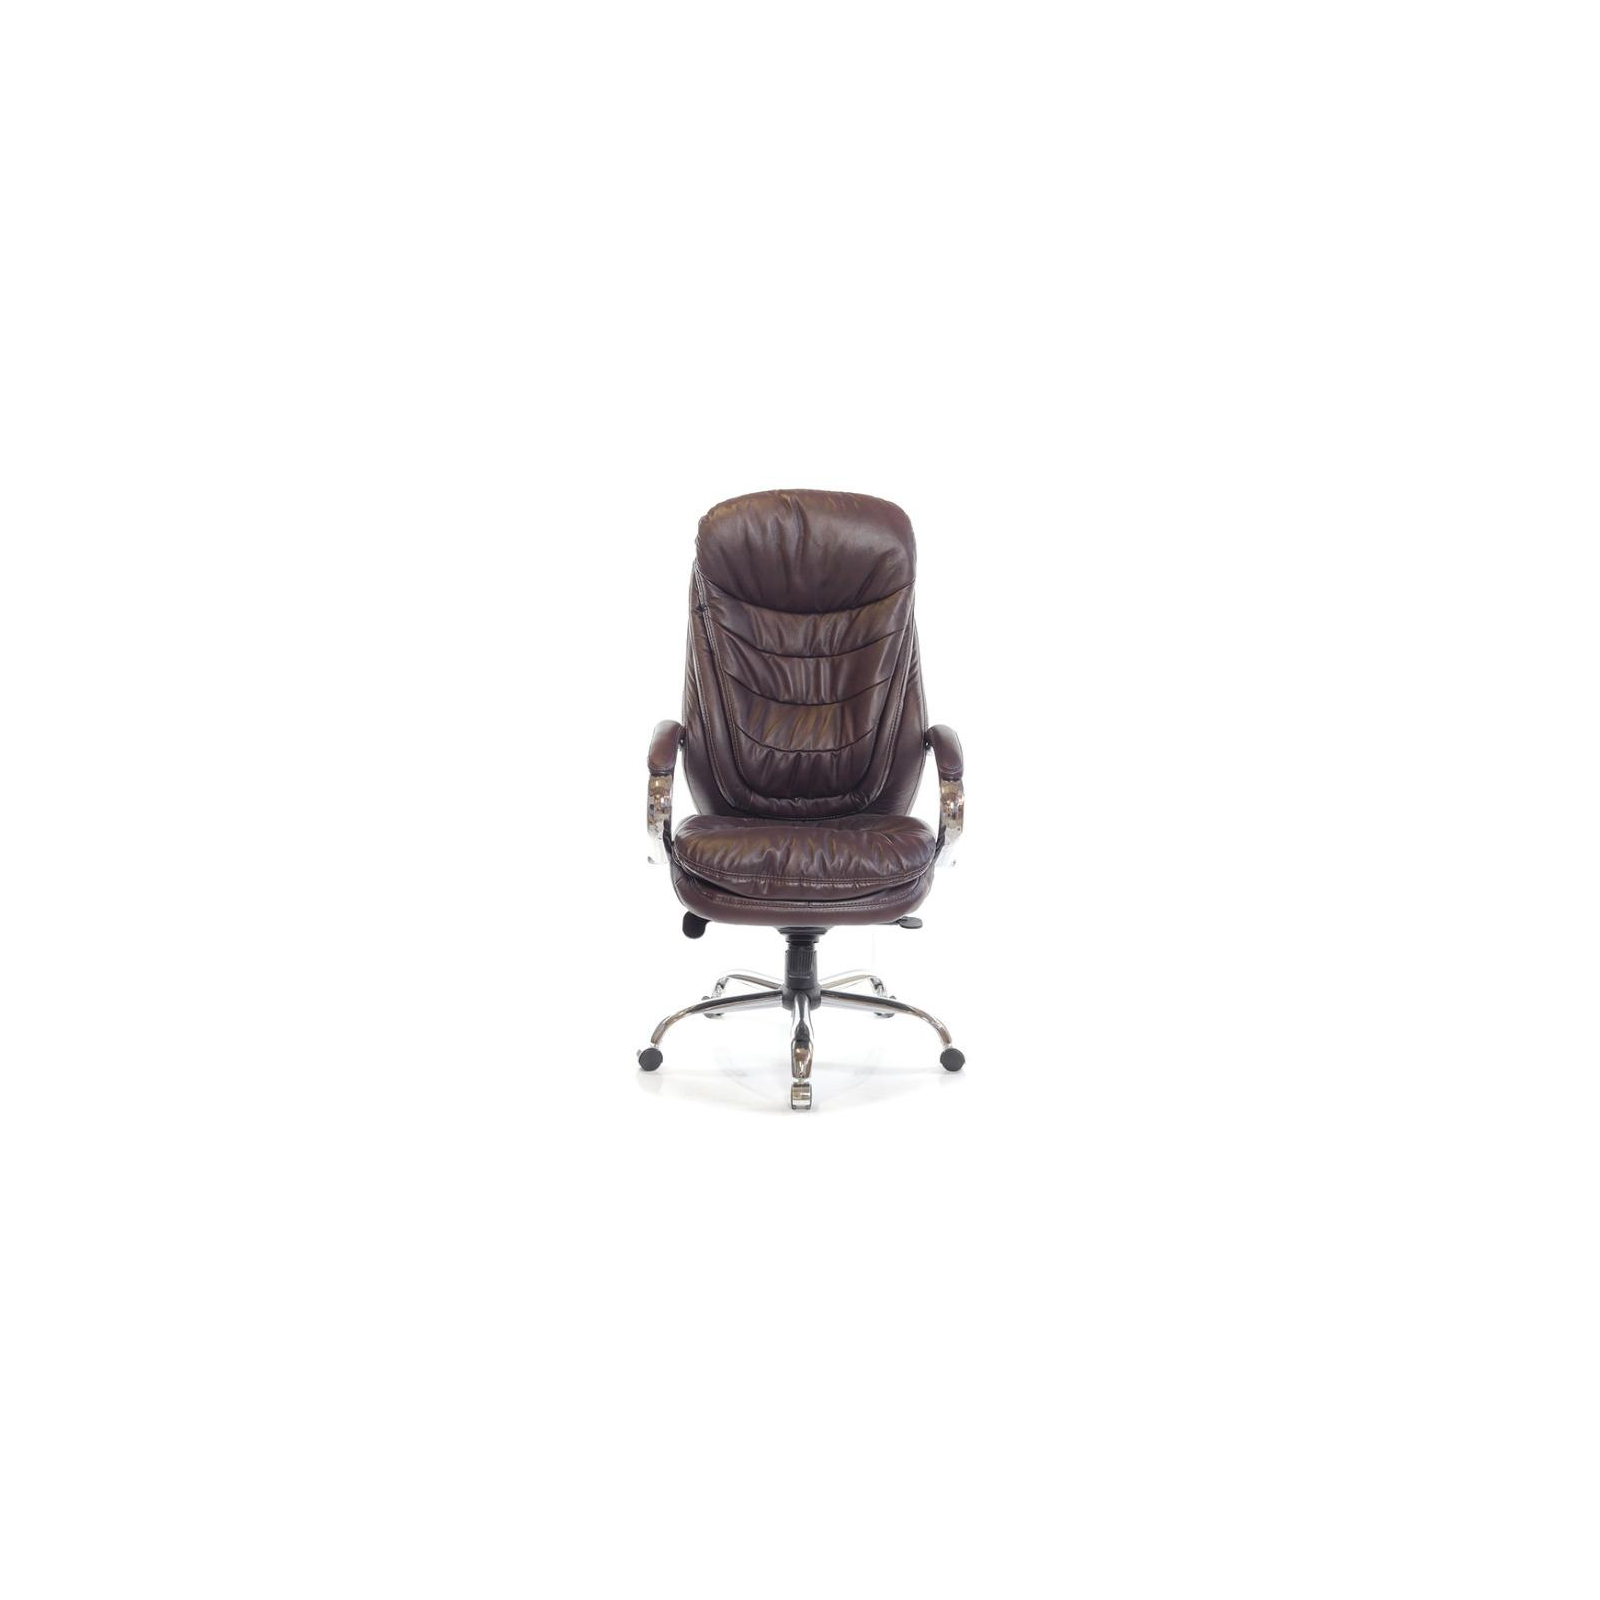 Офисное кресло Аклас Валенсия Soft CH MB Белое (07392) изображение 2